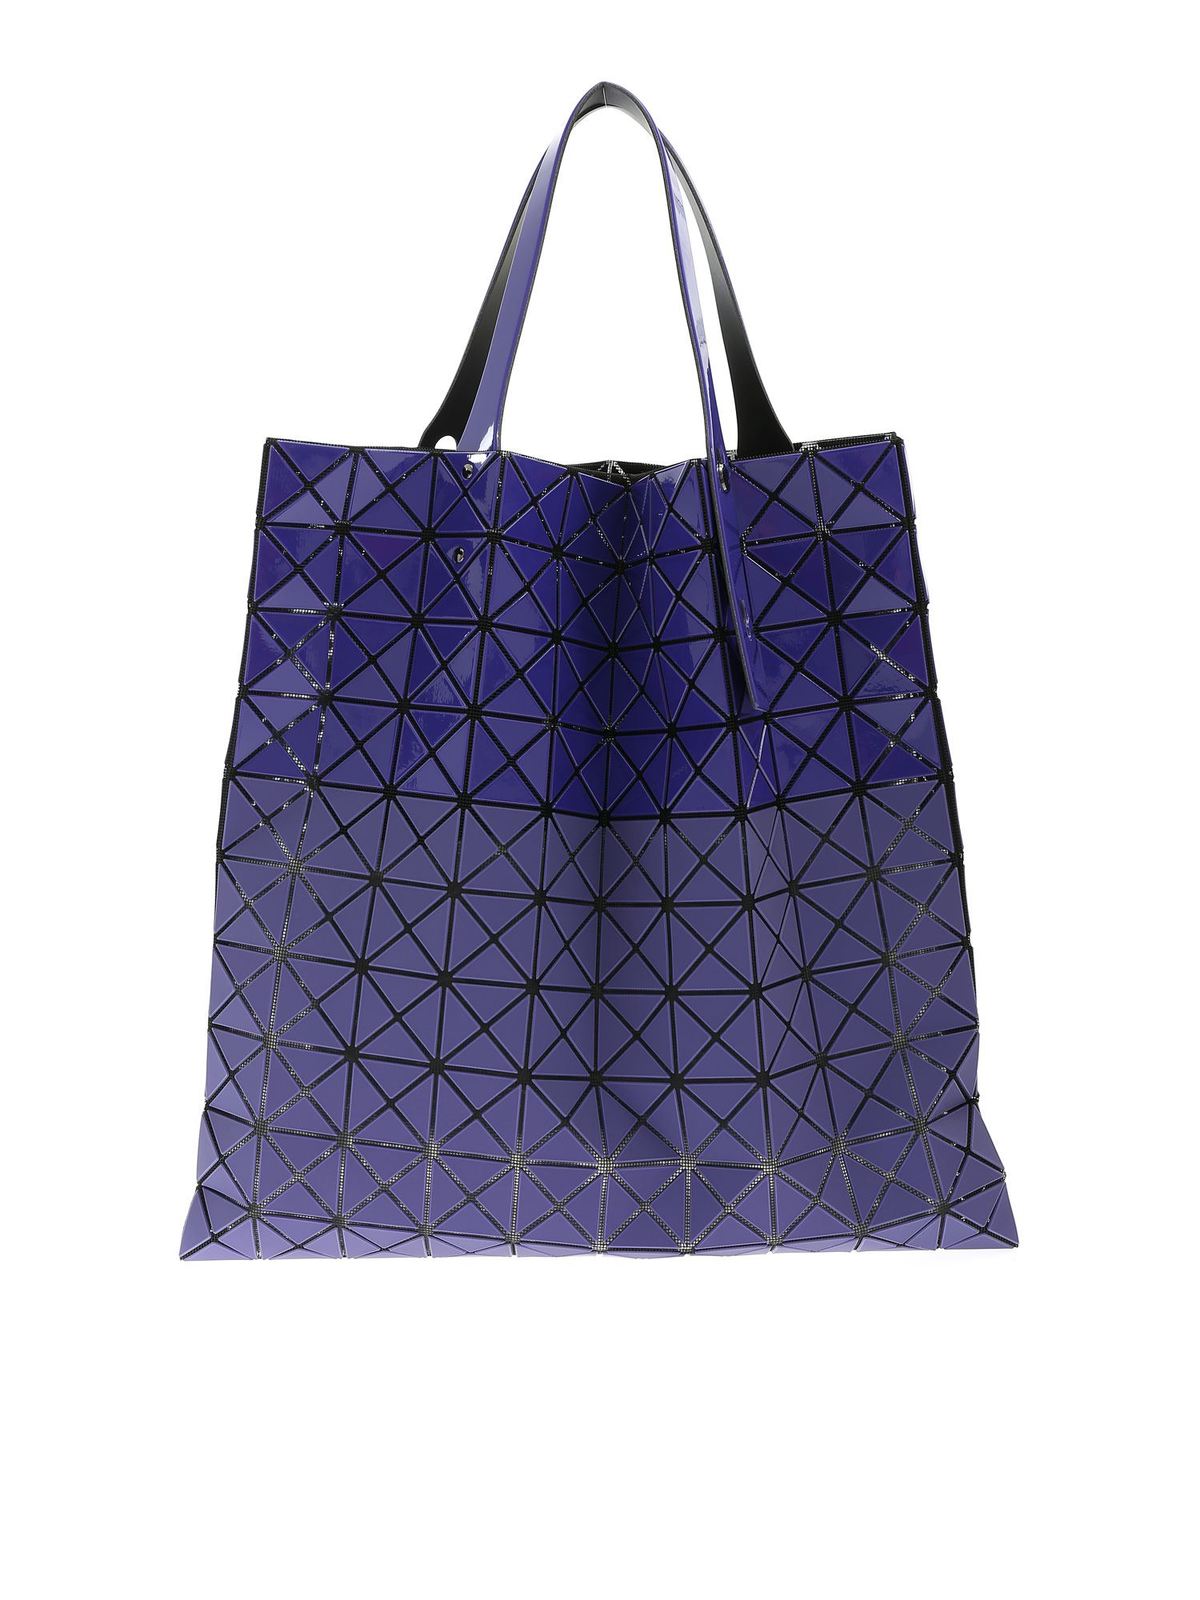 BAO BAO Issey Miyake - Prism Bi-Texture bag in purple - totes bags ...